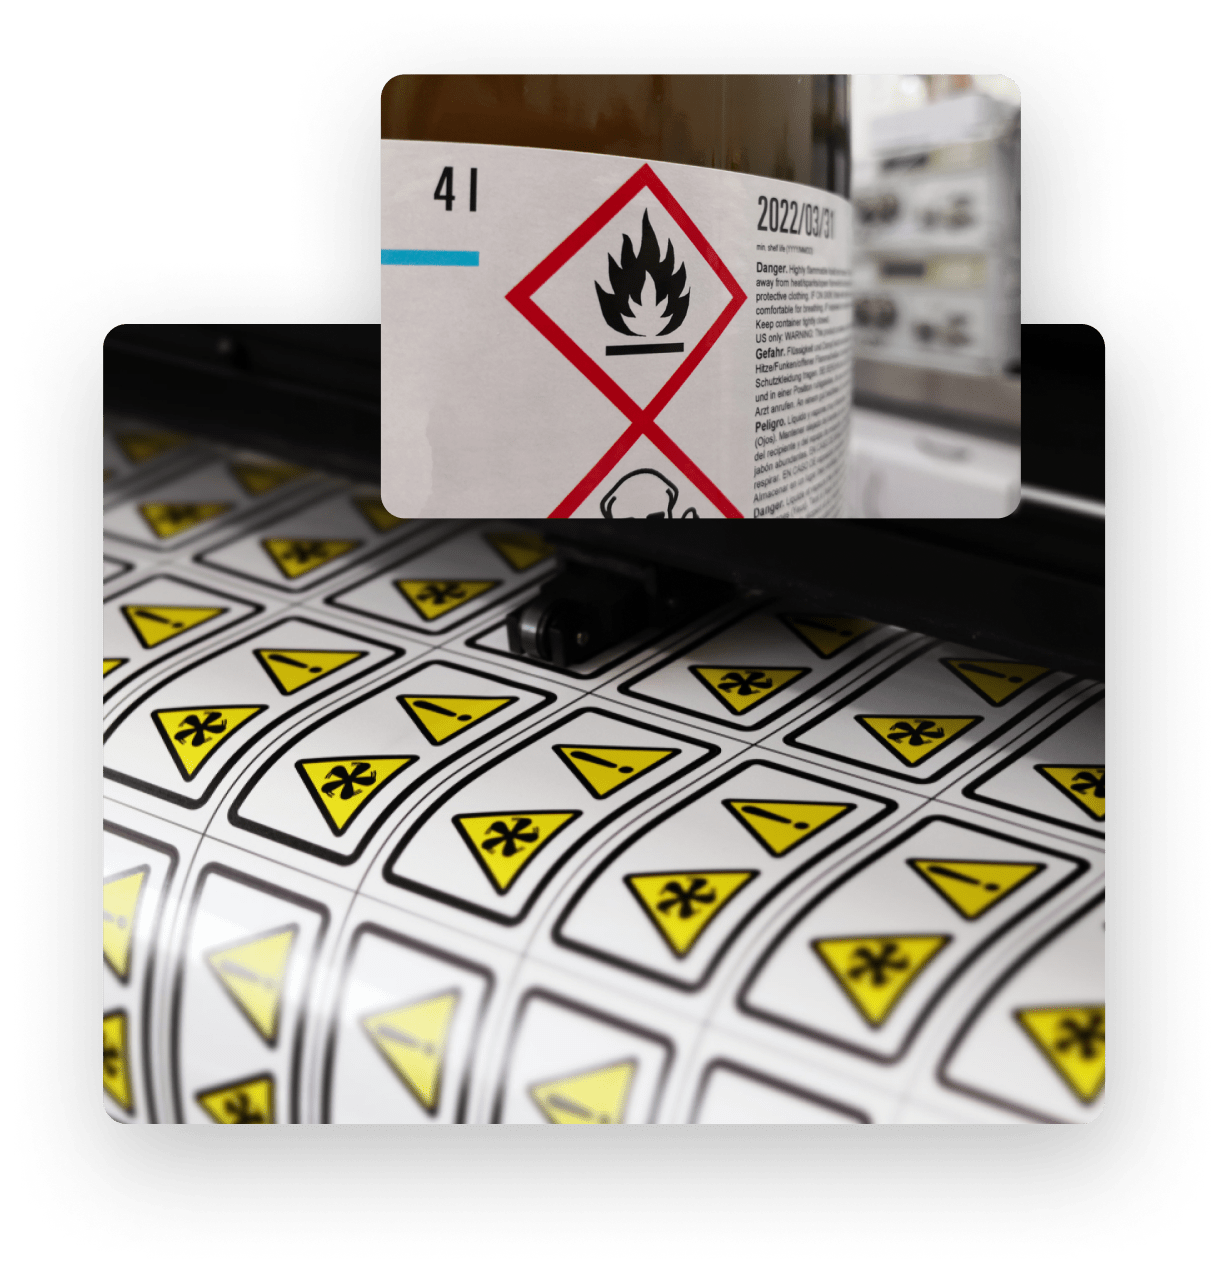 Fotos de etiquetas adhesivas para mercancías peligrosas